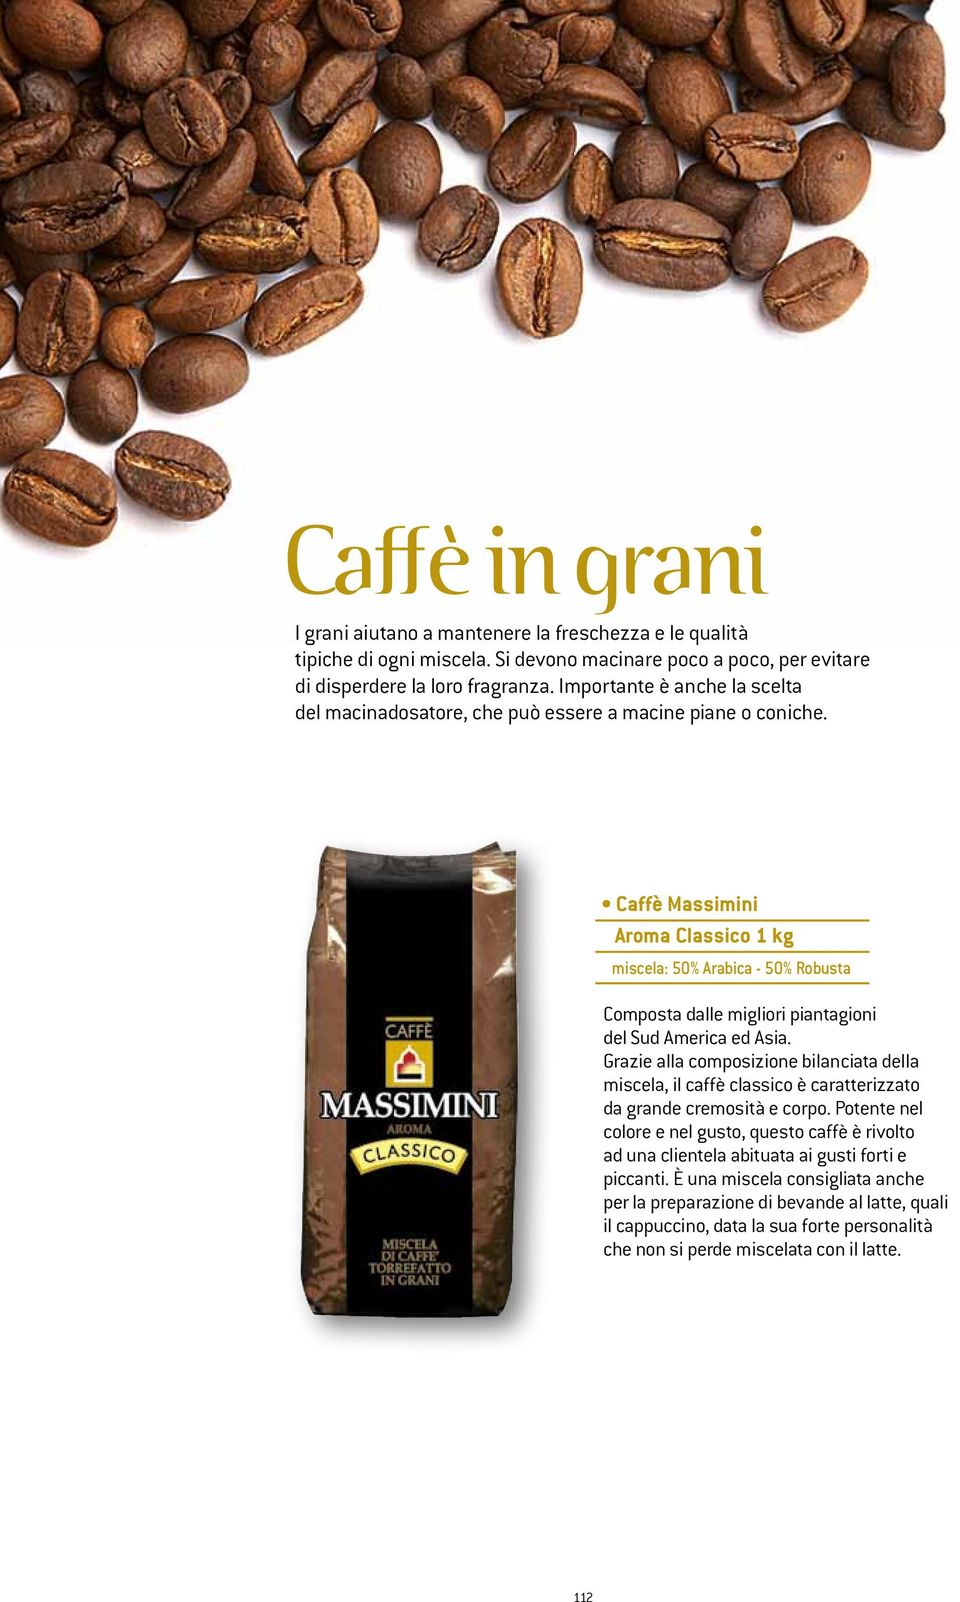 Caffè Massimini Aroma Classico 1 kg miscela: 50% Arabica - 50% Robusta Composta dalle migliori piantagioni del Sud America ed Asia.